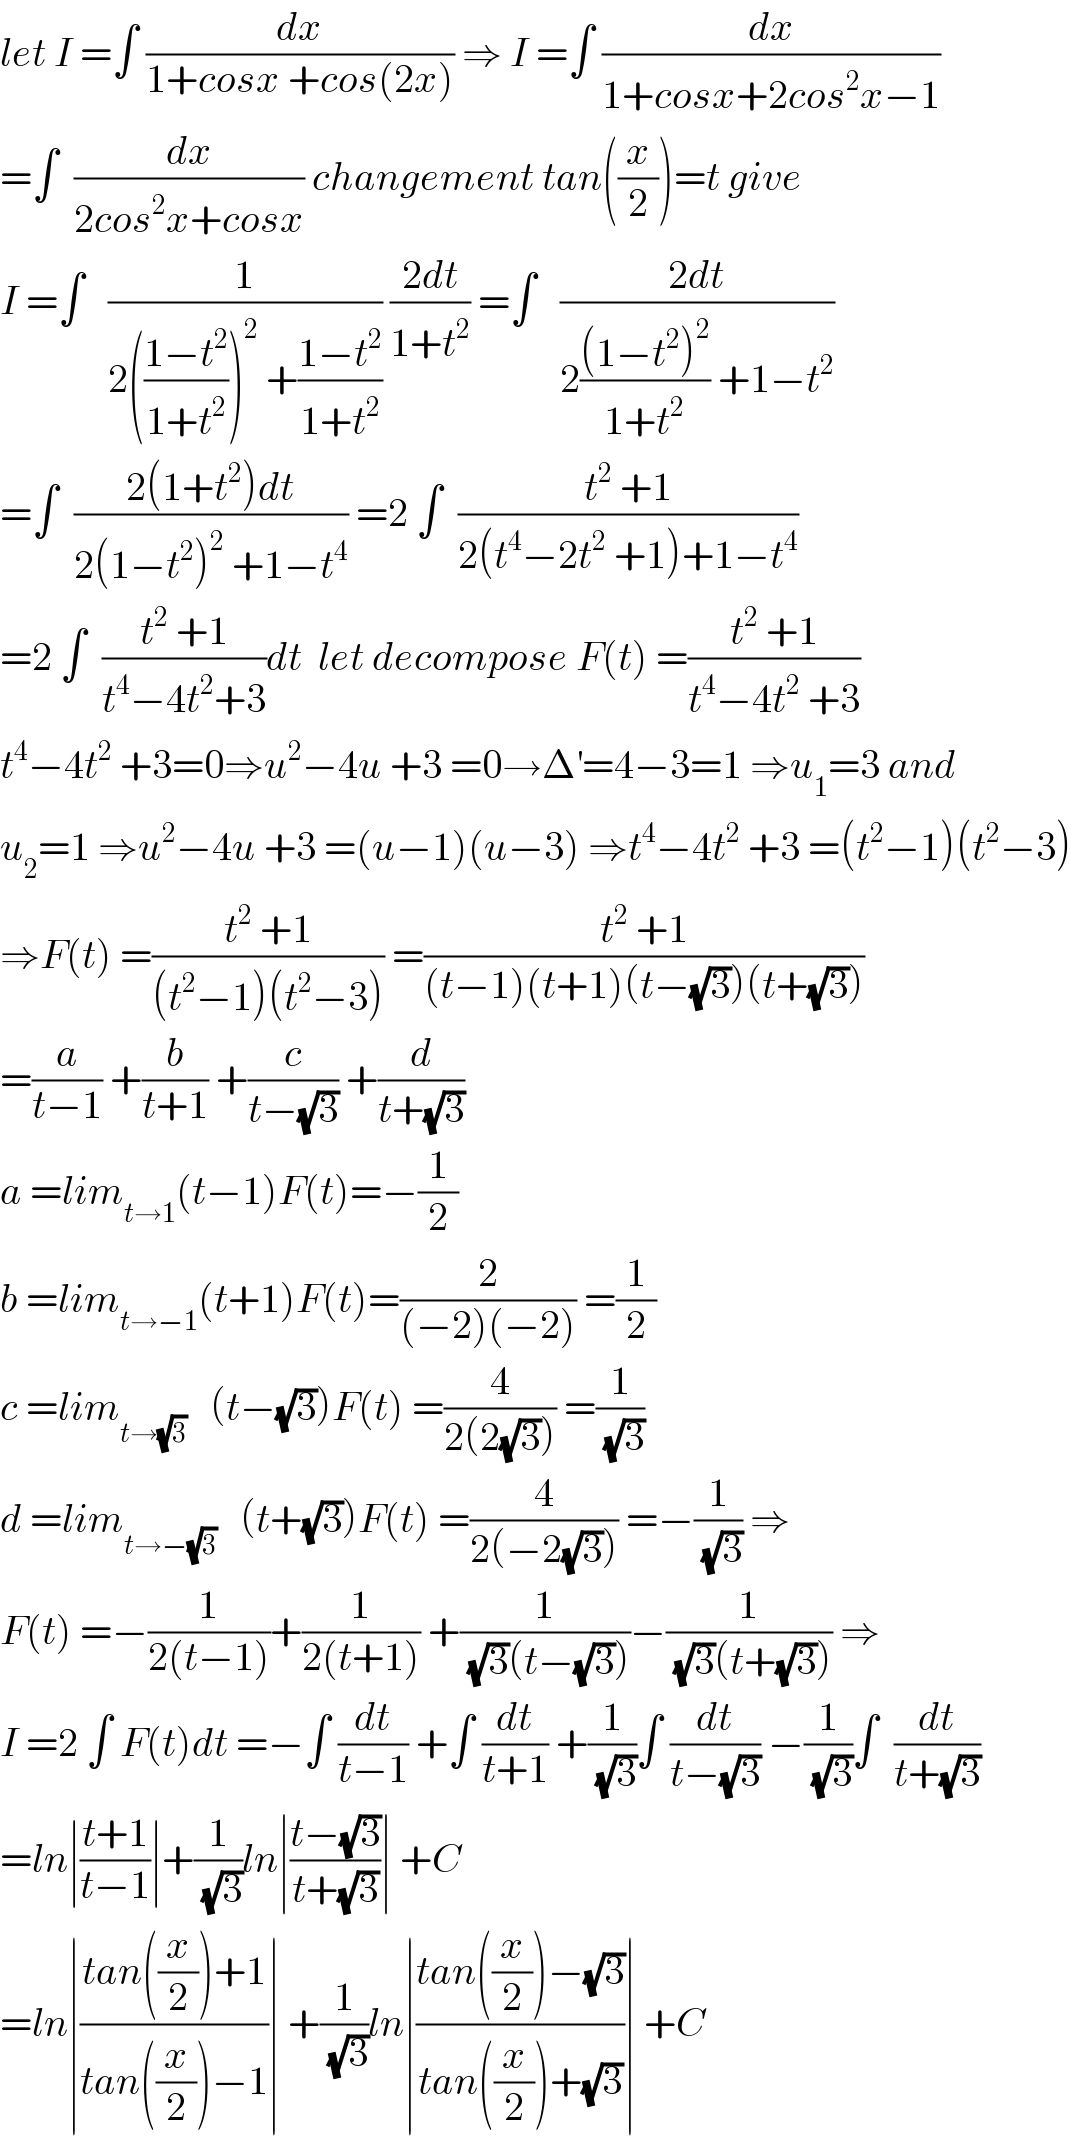 let I =∫ (dx/(1+cosx +cos(2x))) ⇒ I =∫ (dx/(1+cosx+2cos^2 x−1))  =∫  (dx/(2cos^2 x+cosx)) changement tan((x/2))=t give  I =∫   (1/(2(((1−t^2 )/(1+t^2 )))^2  +((1−t^2 )/(1+t^2 )))) ((2dt)/(1+t^2 )) =∫   ((2dt)/(2(((1−t^2 )^2 )/(1+t^2 )) +1−t^2 ))  =∫  ((2(1+t^2 )dt)/(2(1−t^2 )^2  +1−t^4 )) =2 ∫  ((t^2  +1)/(2(t^4 −2t^2  +1)+1−t^4 ))  =2 ∫  ((t^2  +1)/(t^4 −4t^2 +3))dt  let decompose F(t) =((t^2  +1)/(t^4 −4t^2  +3))  t^4 −4t^2  +3=0⇒u^2 −4u +3 =0→Δ^′ =4−3=1 ⇒u_1 =3 and  u_2 =1 ⇒u^2 −4u +3 =(u−1)(u−3) ⇒t^4 −4t^2  +3 =(t^2 −1)(t^2 −3)  ⇒F(t) =((t^2  +1)/((t^2 −1)(t^2 −3))) =((t^2  +1)/((t−1)(t+1)(t−(√3))(t+(√3))))  =(a/(t−1)) +(b/(t+1)) +(c/(t−(√3))) +(d/(t+(√3)))  a =lim_(t→1) (t−1)F(t)=−(1/2)  b =lim_(t→−1) (t+1)F(t)=(2/((−2)(−2))) =(1/2)  c =lim_(t→(√3))    (t−(√3))F(t) =(4/(2(2(√3)))) =(1/(√3))  d =lim_(t→−(√3))    (t+(√3))F(t) =(4/(2(−2(√3)))) =−(1/(√3)) ⇒  F(t) =−(1/(2(t−1)))+(1/(2(t+1))) +(1/((√3)(t−(√3))))−(1/((√3)(t+(√3)))) ⇒  I =2 ∫ F(t)dt =−∫ (dt/(t−1)) +∫ (dt/(t+1)) +(1/(√3))∫ (dt/(t−(√3))) −(1/(√3))∫  (dt/(t+(√3)))  =ln∣((t+1)/(t−1))∣+(1/(√3))ln∣((t−(√3))/(t+(√3)))∣ +C  =ln∣((tan((x/2))+1)/(tan((x/2))−1))∣ +(1/(√3))ln∣((tan((x/2))−(√3))/(tan((x/2))+(√3)))∣ +C   